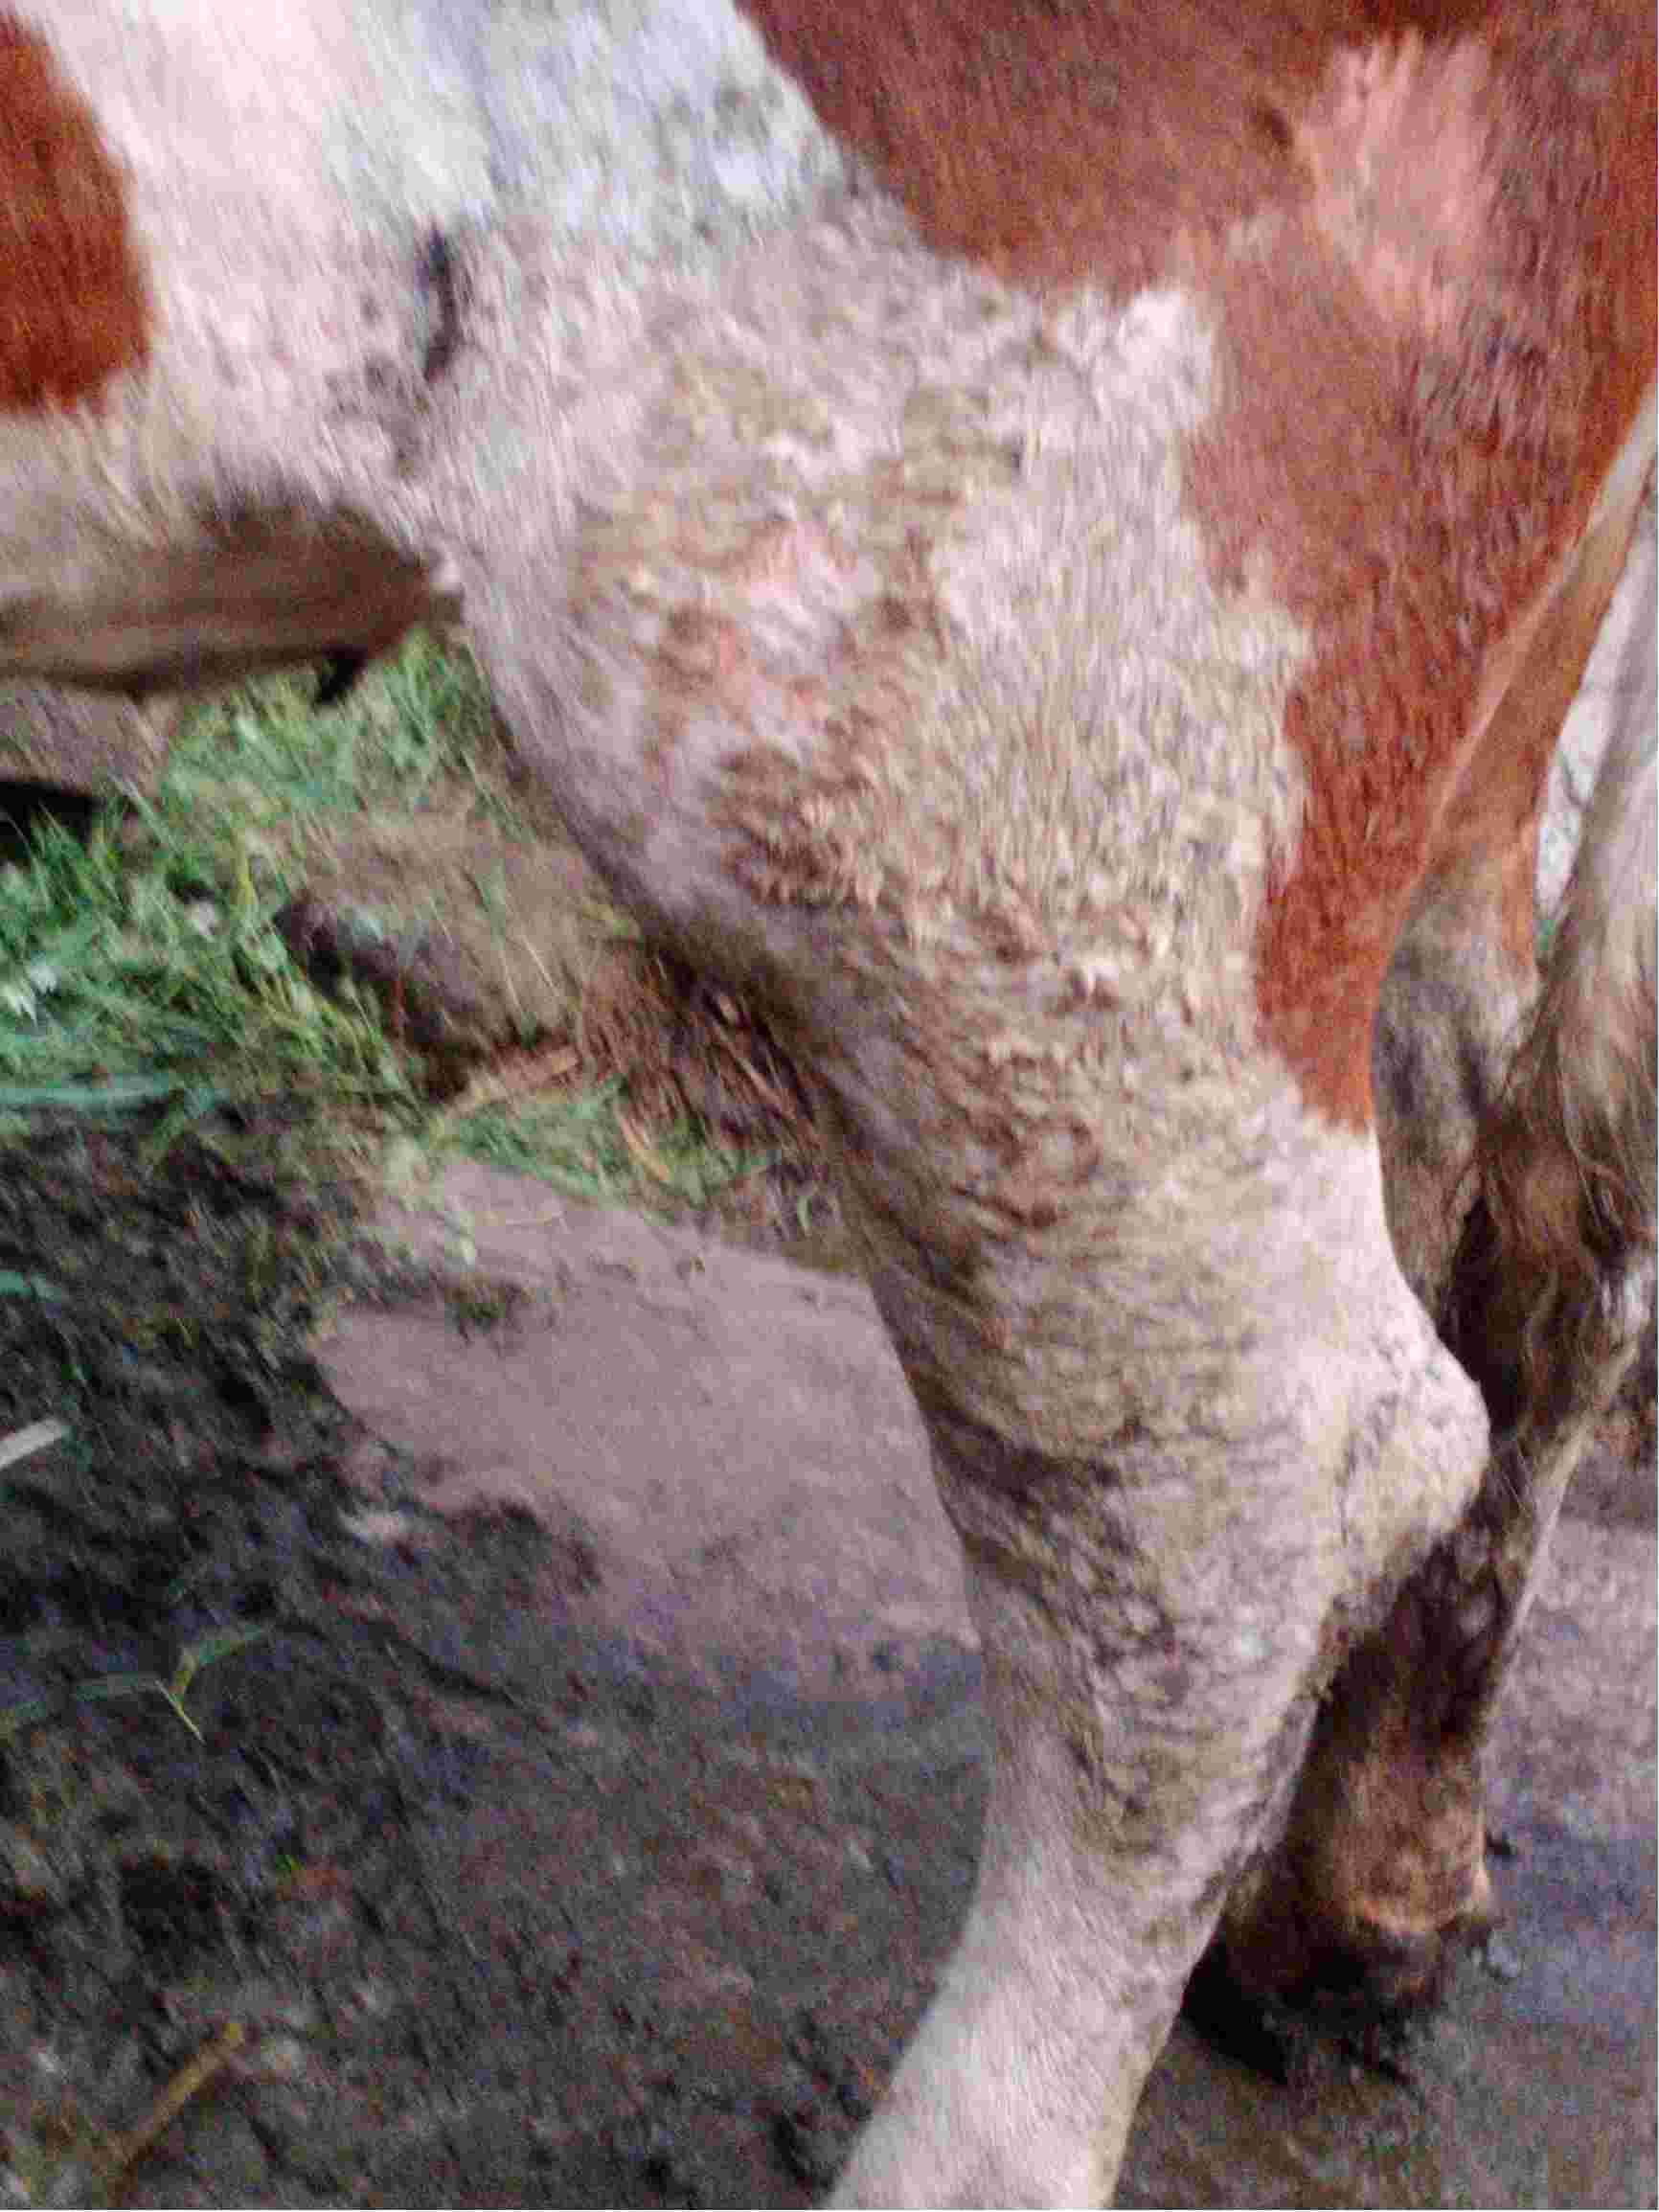 我家的母牛后腿水肿严重,都不能正常走路,但能吃一点草.